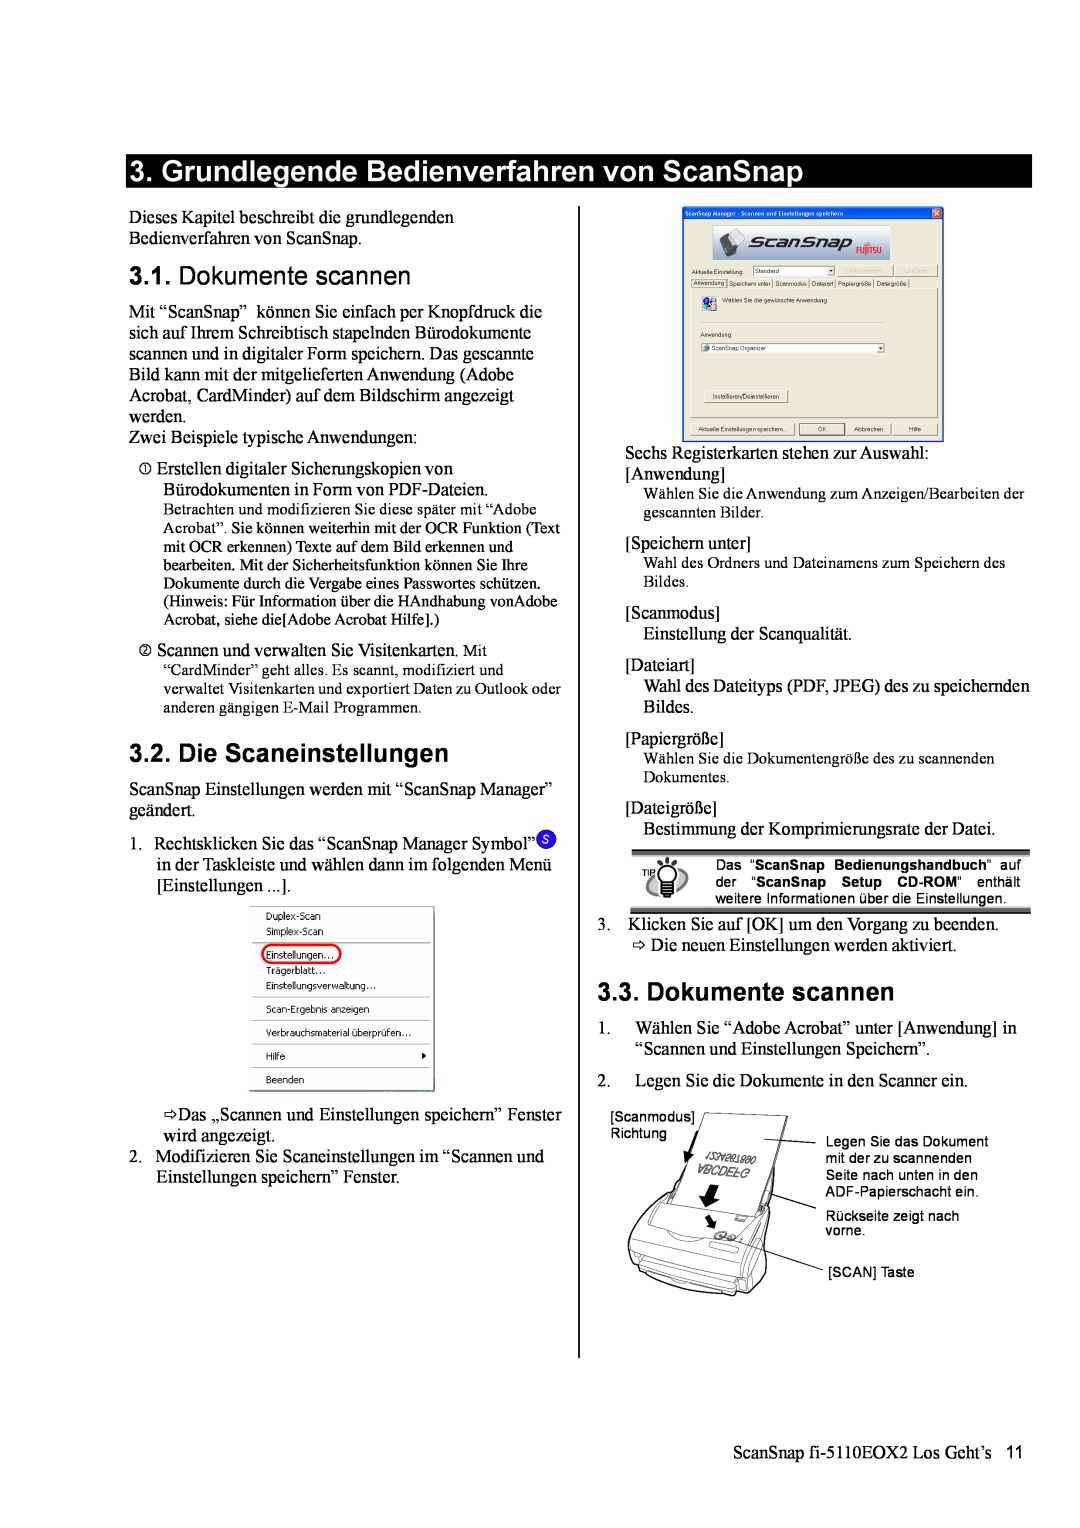 Fujitsu fi-5110EOX2 manual Grundlegende Bedienverfahren von ScanSnap, Dokumente scannen, Die Scaneinstellungen 